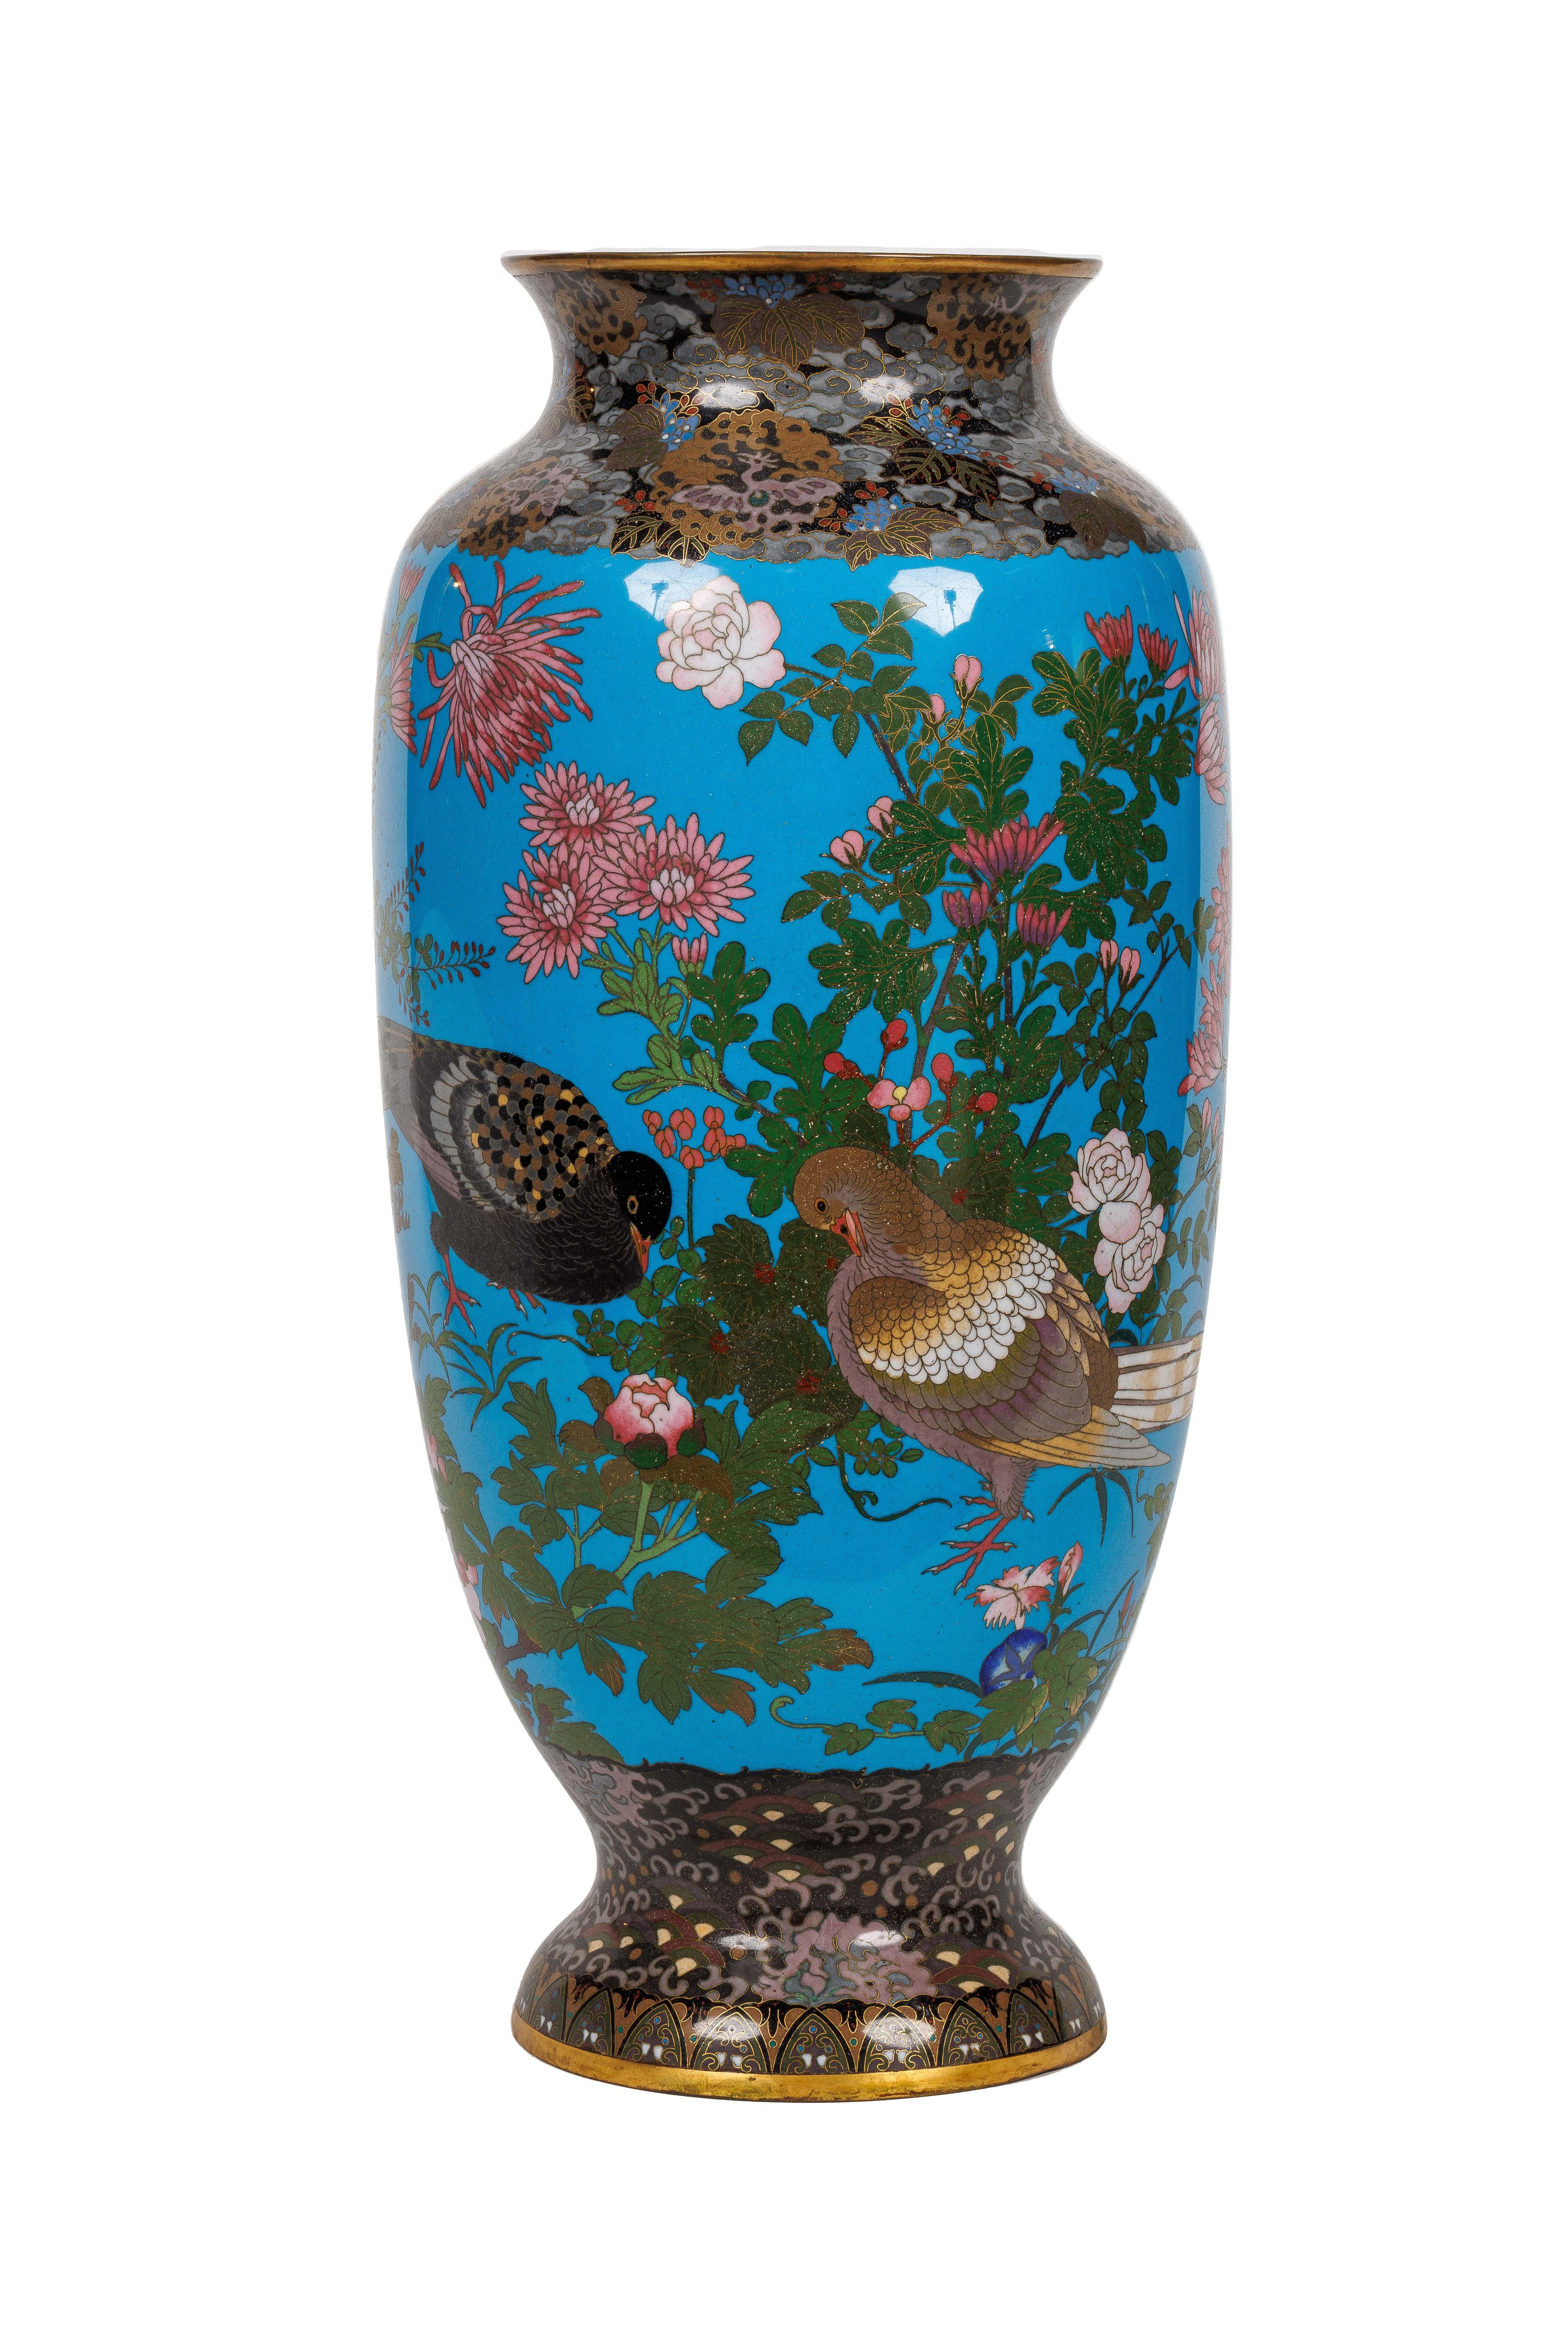 Une grande paire de vases en émail cloisonné japonais de la période Meiji, attribués à Goto Seizaburo, 19e siècle.

Ces vases ont été fabriqués pendant la période Meiji (1868-1912) au Japon et se caractérisent par leur fond en émail bleu avec des